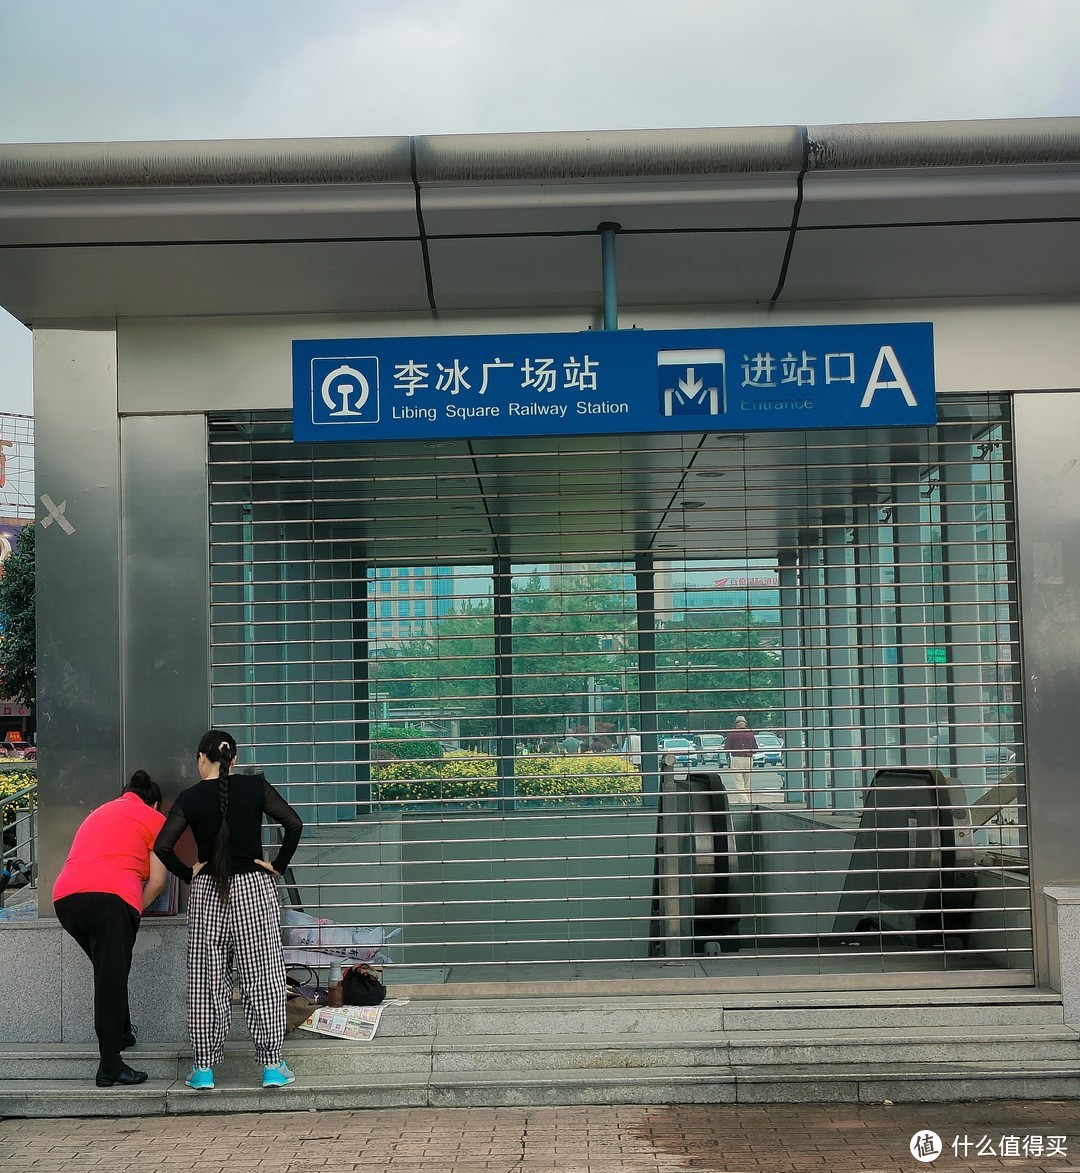 都江堰-李冰广场站-地铁还是高铁？